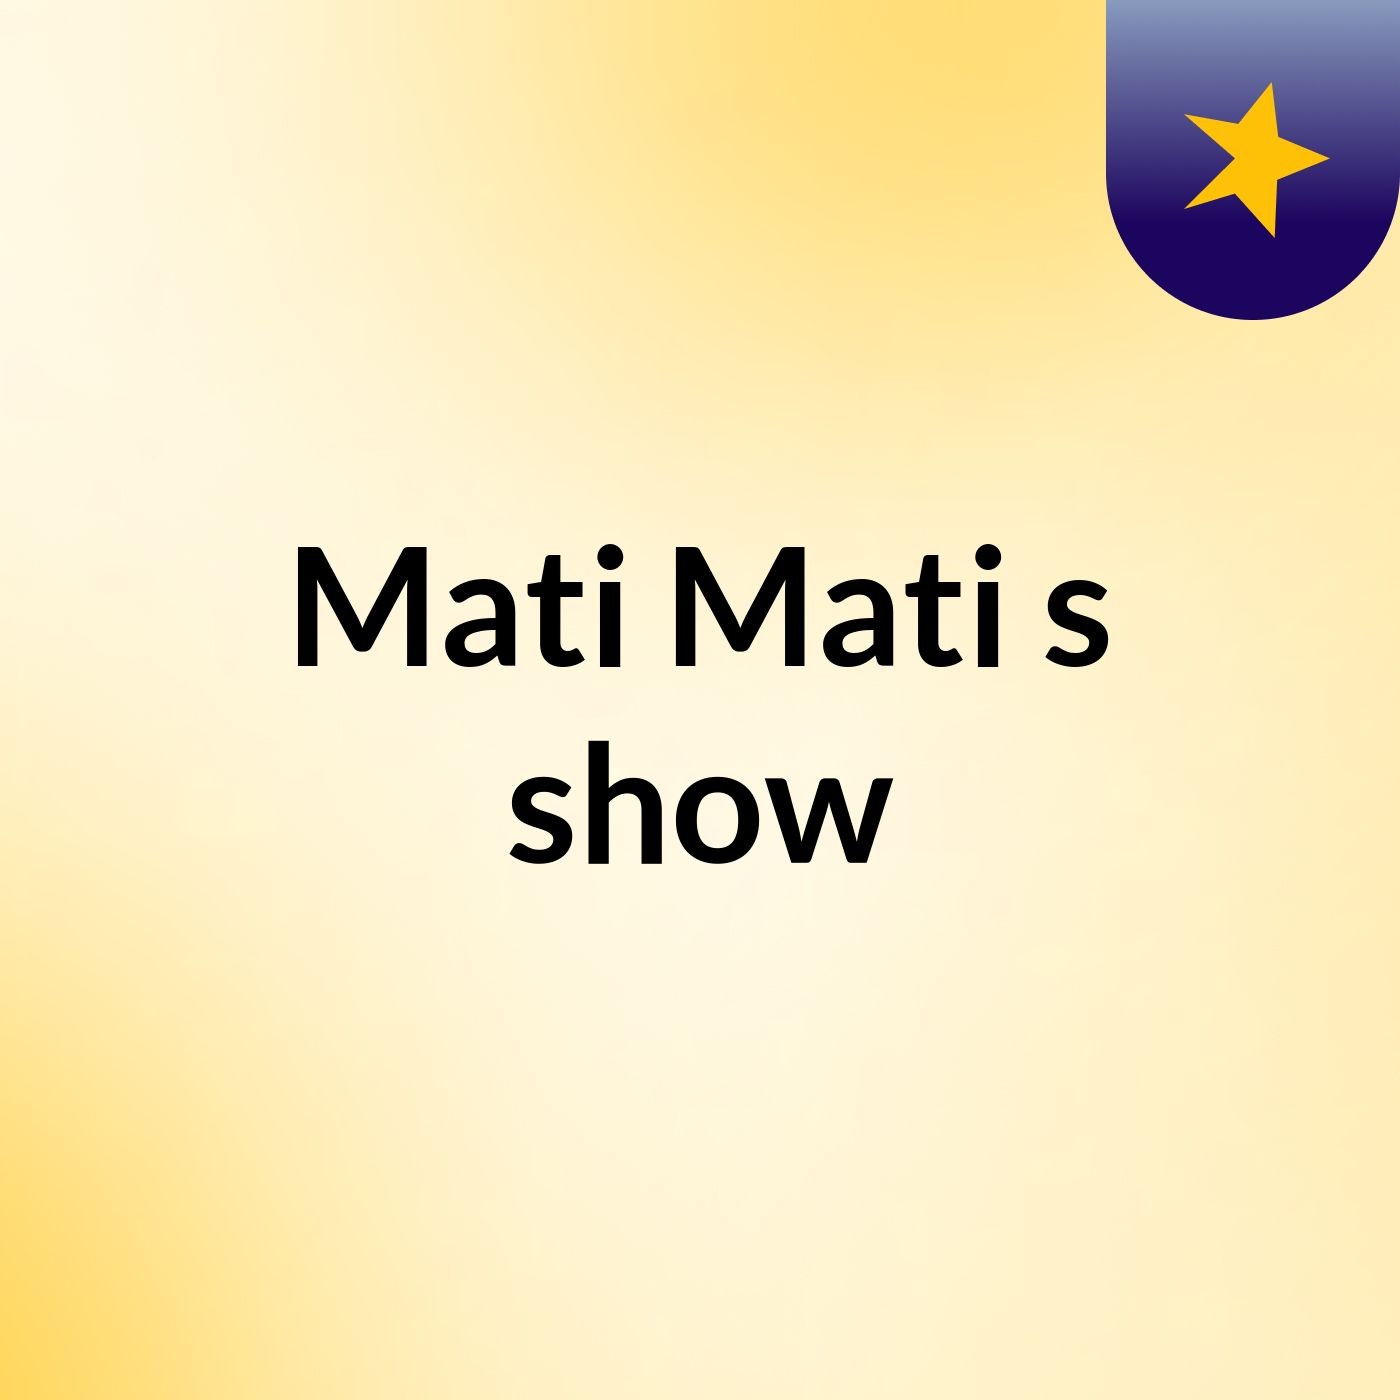 Mati Mati's show